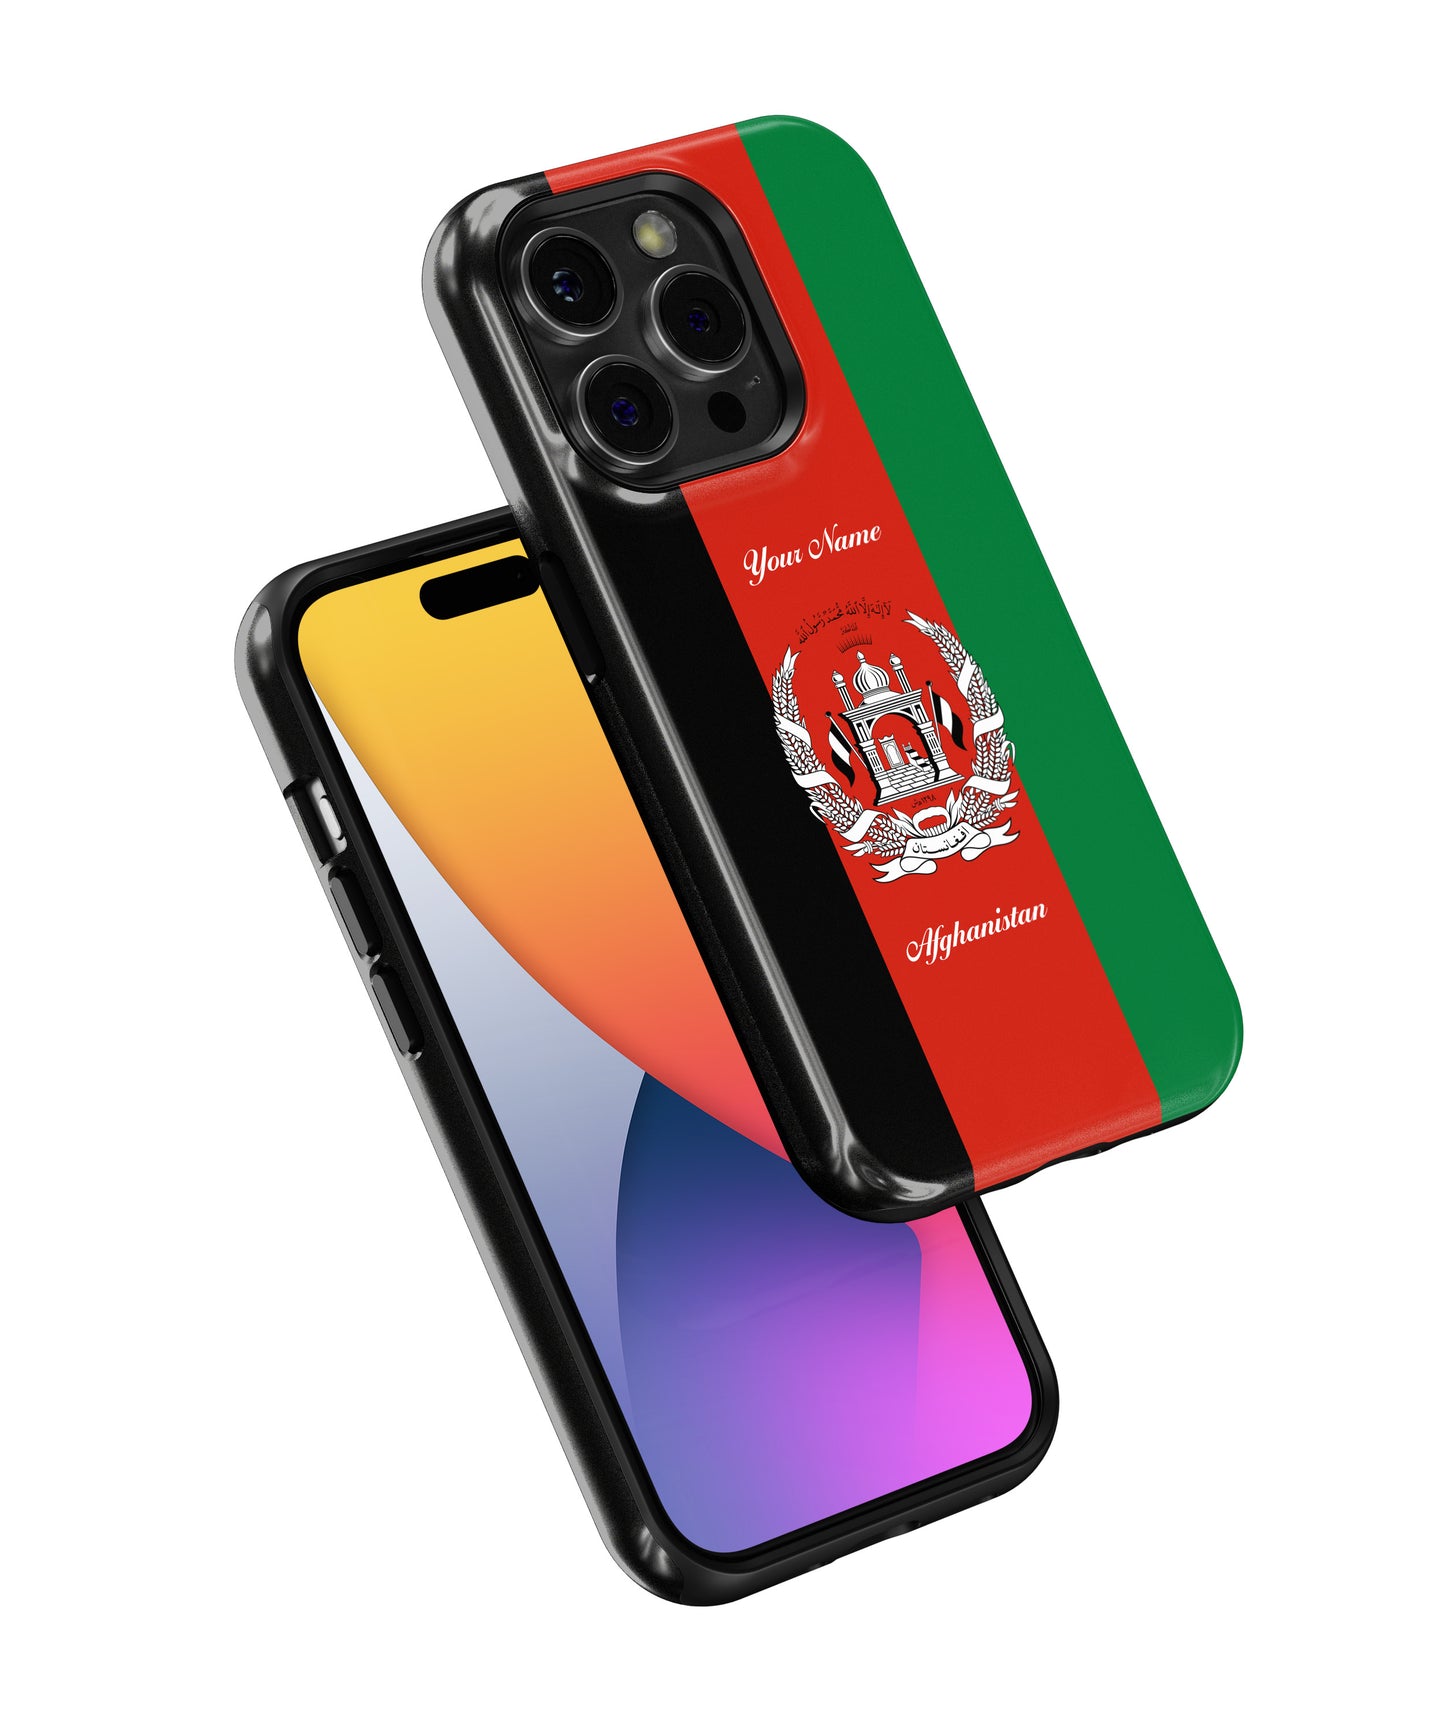 Afghanistan National Emblem - iPhone